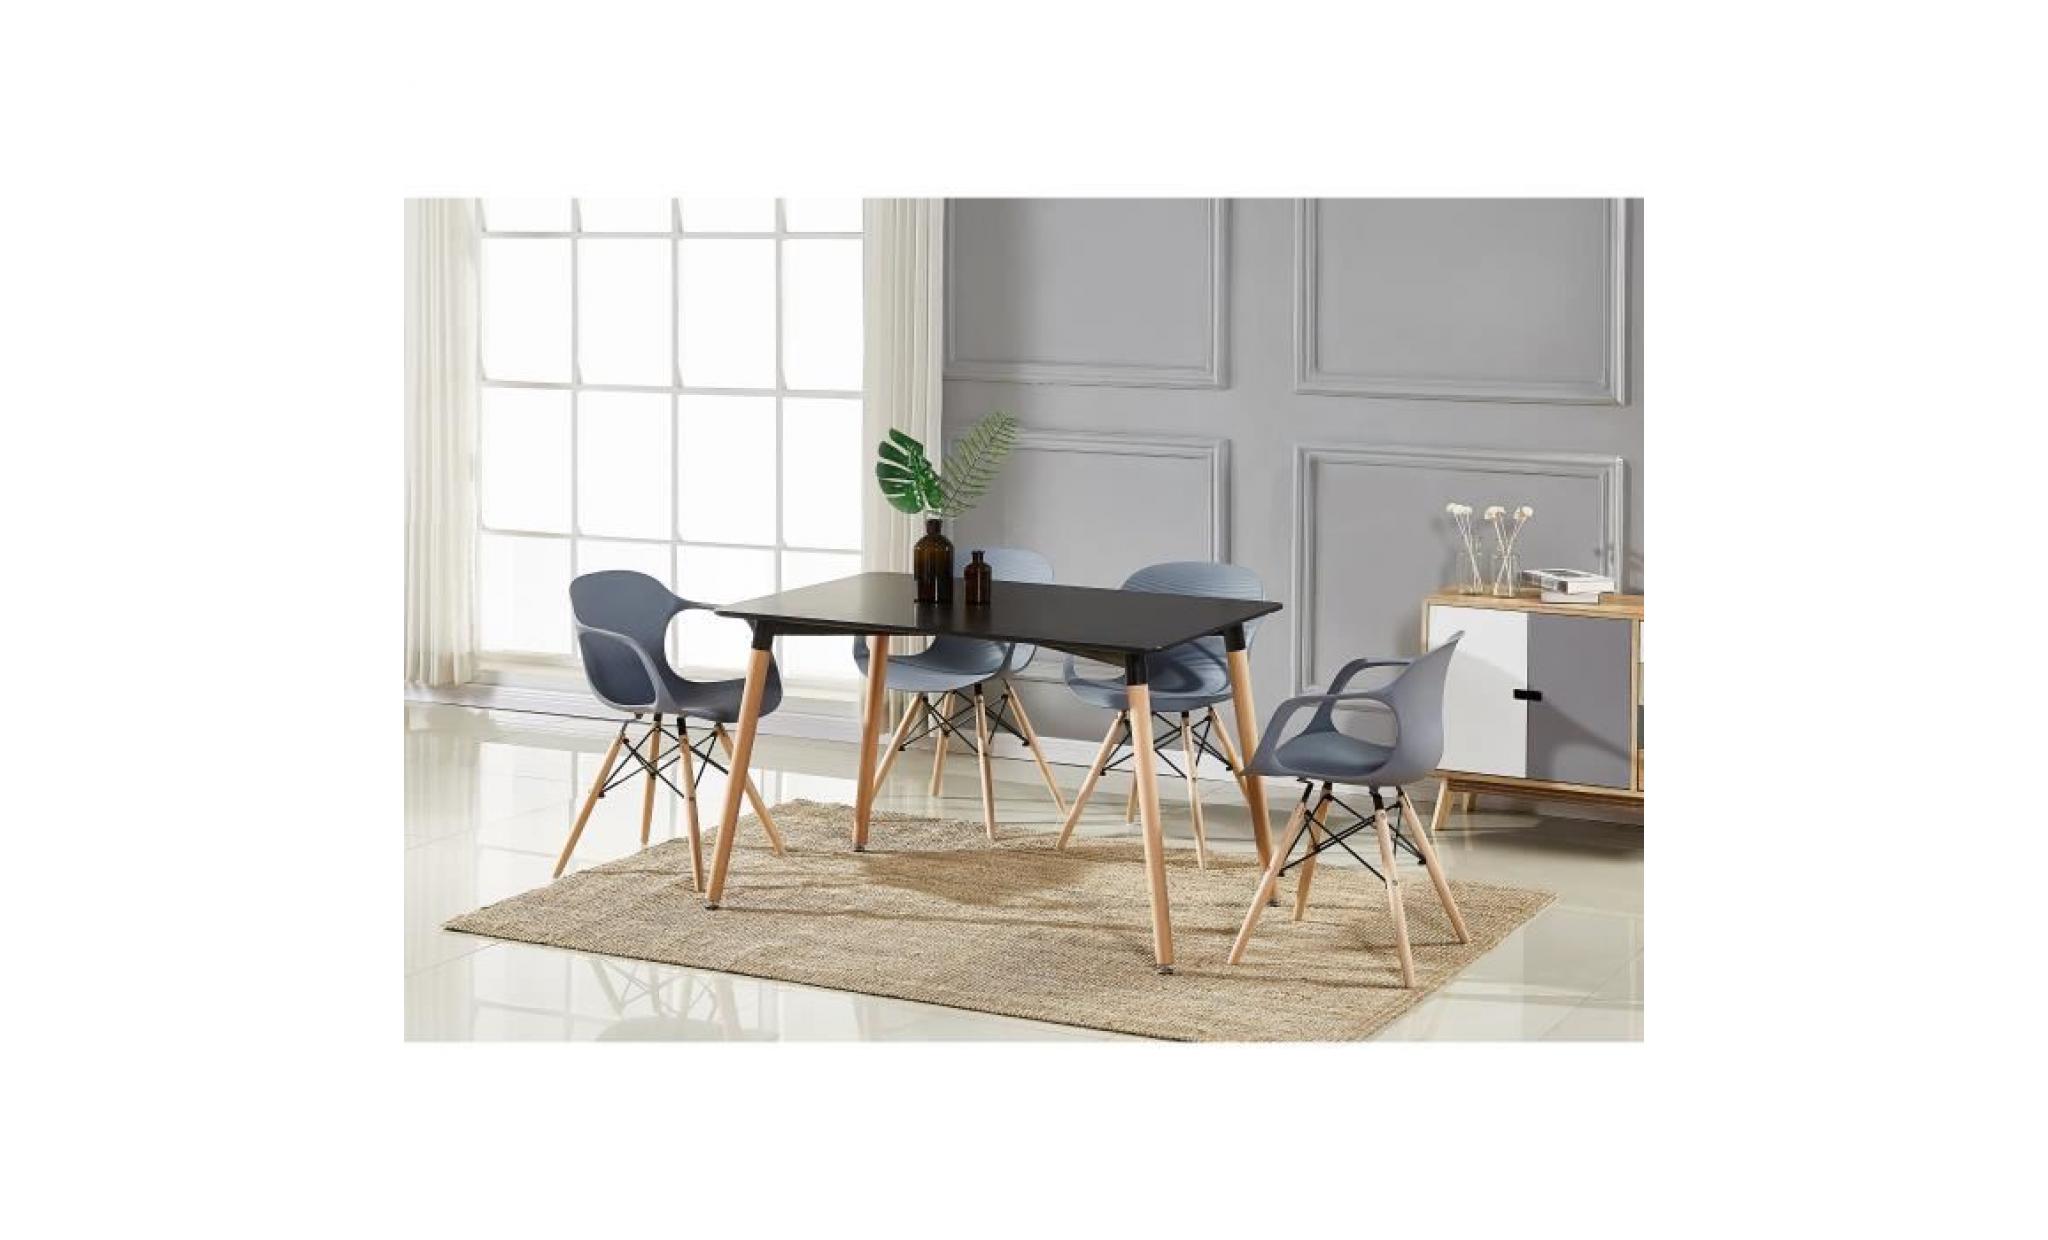 table à manger noire + 4 chaises modernes grises   salle à manger, salon, cuisine   design contemporain   alecia halo